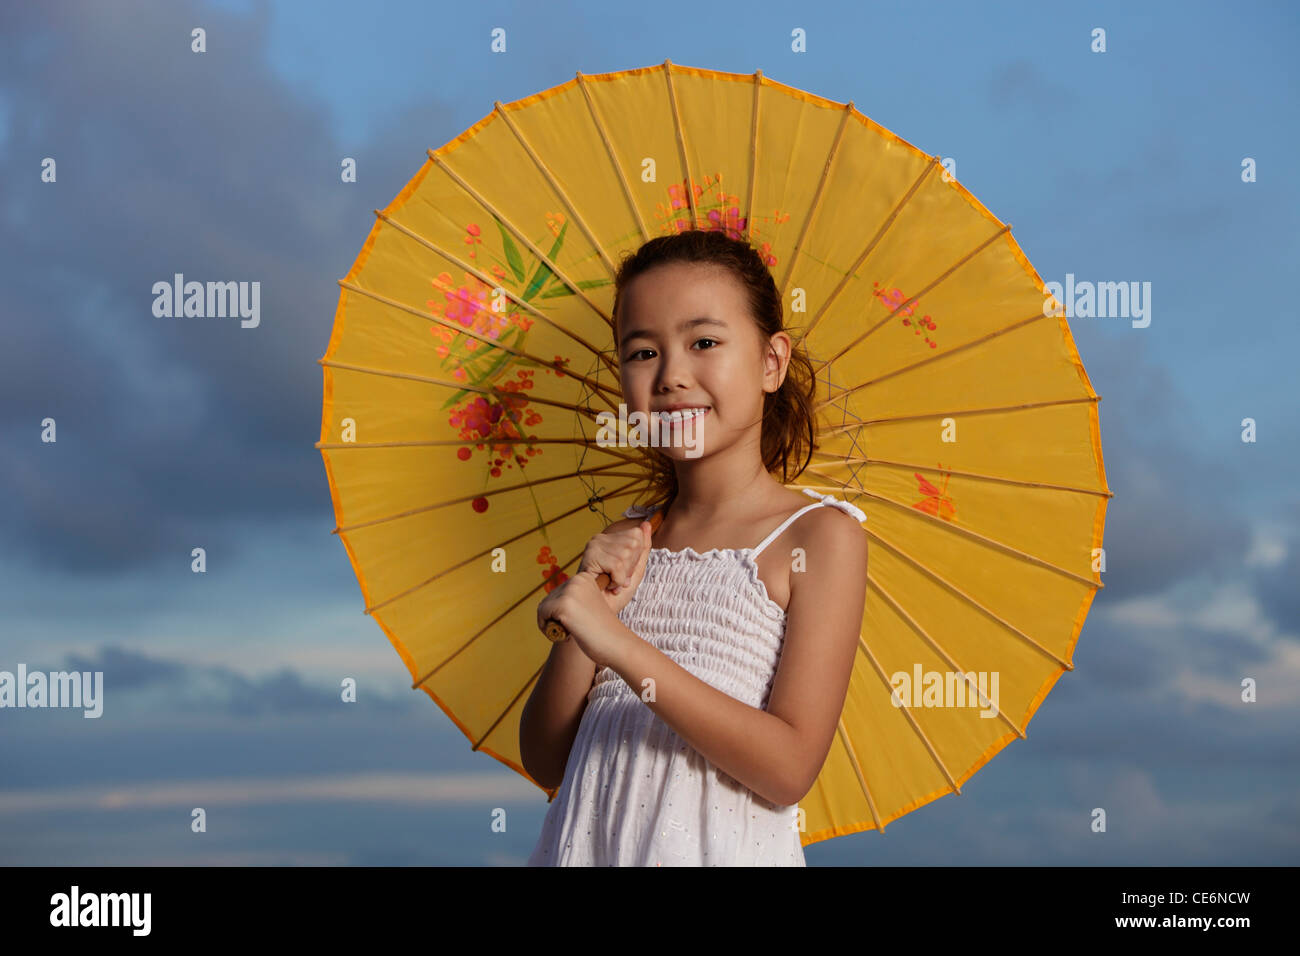 Sombrilla china fotografías imágenes de alta resolución - Alamy